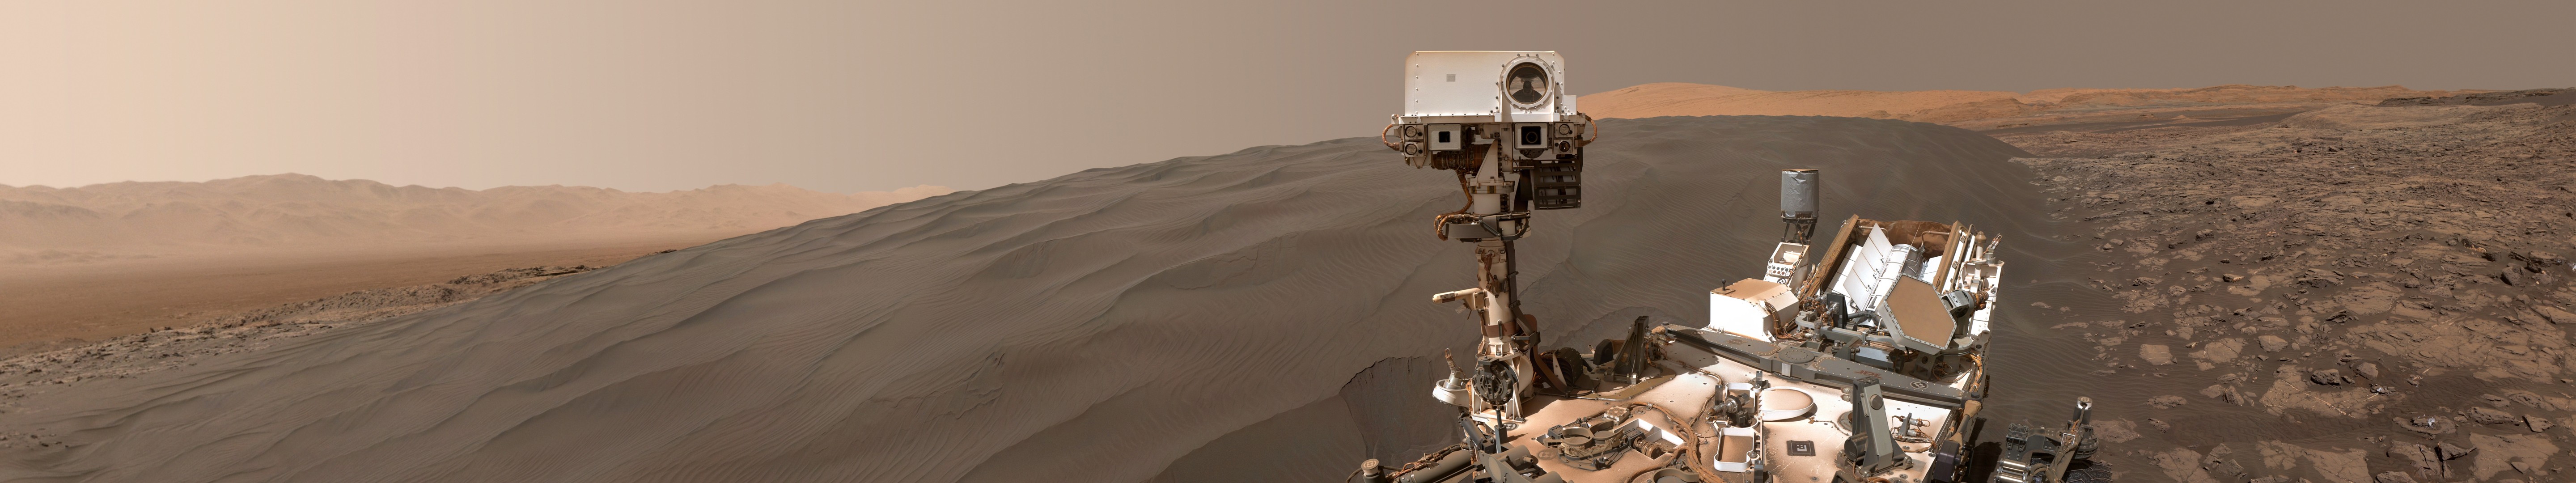 Mars, Space, Rover, Desert, Brown, Robot, NASA, WALL E, Stone, Planet Wallpaper